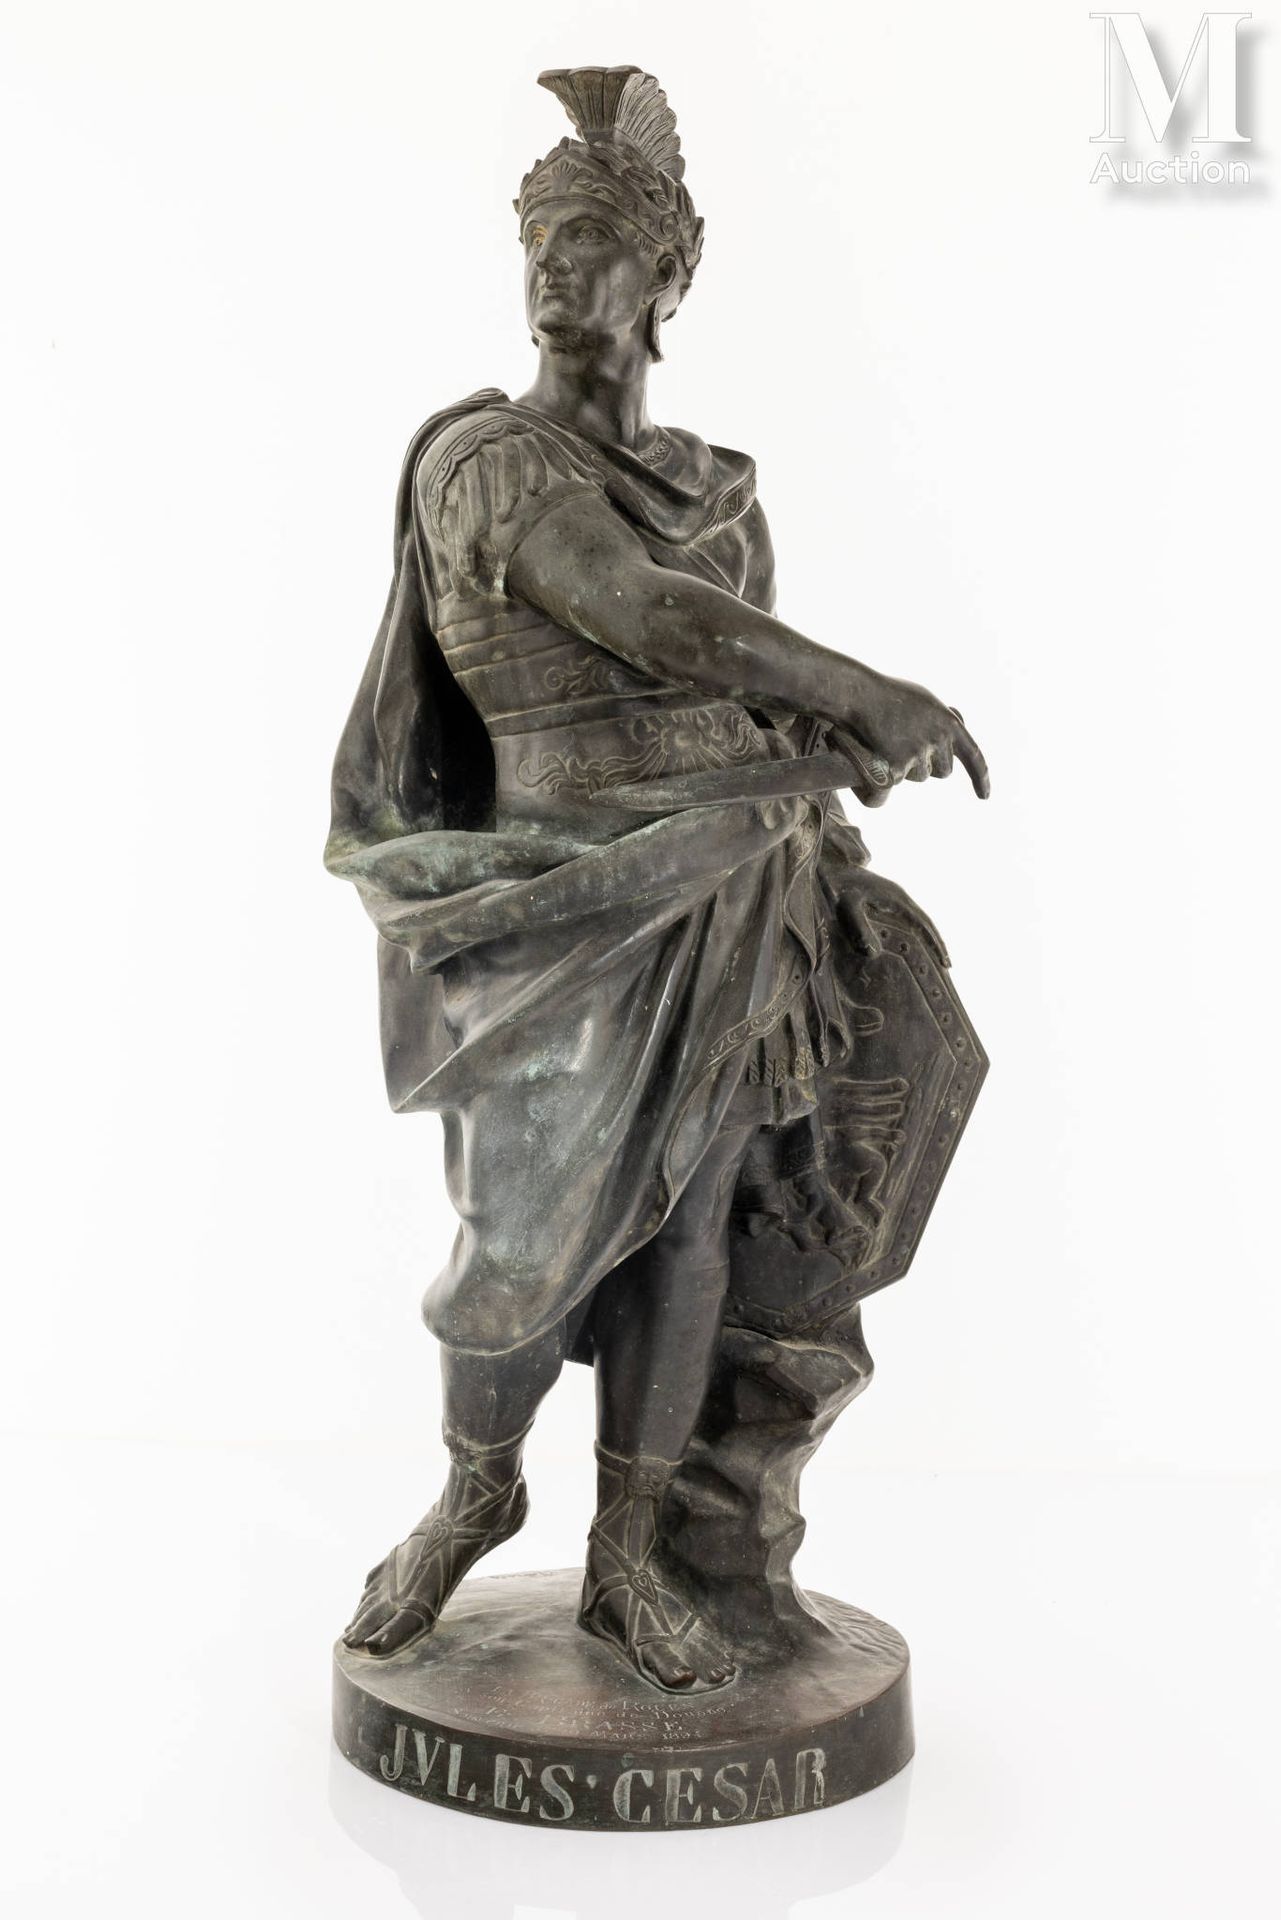 Hippolyte FERRAT - d'après Jules César

Jules César Empereur
Sculpture en bronze&hellip;